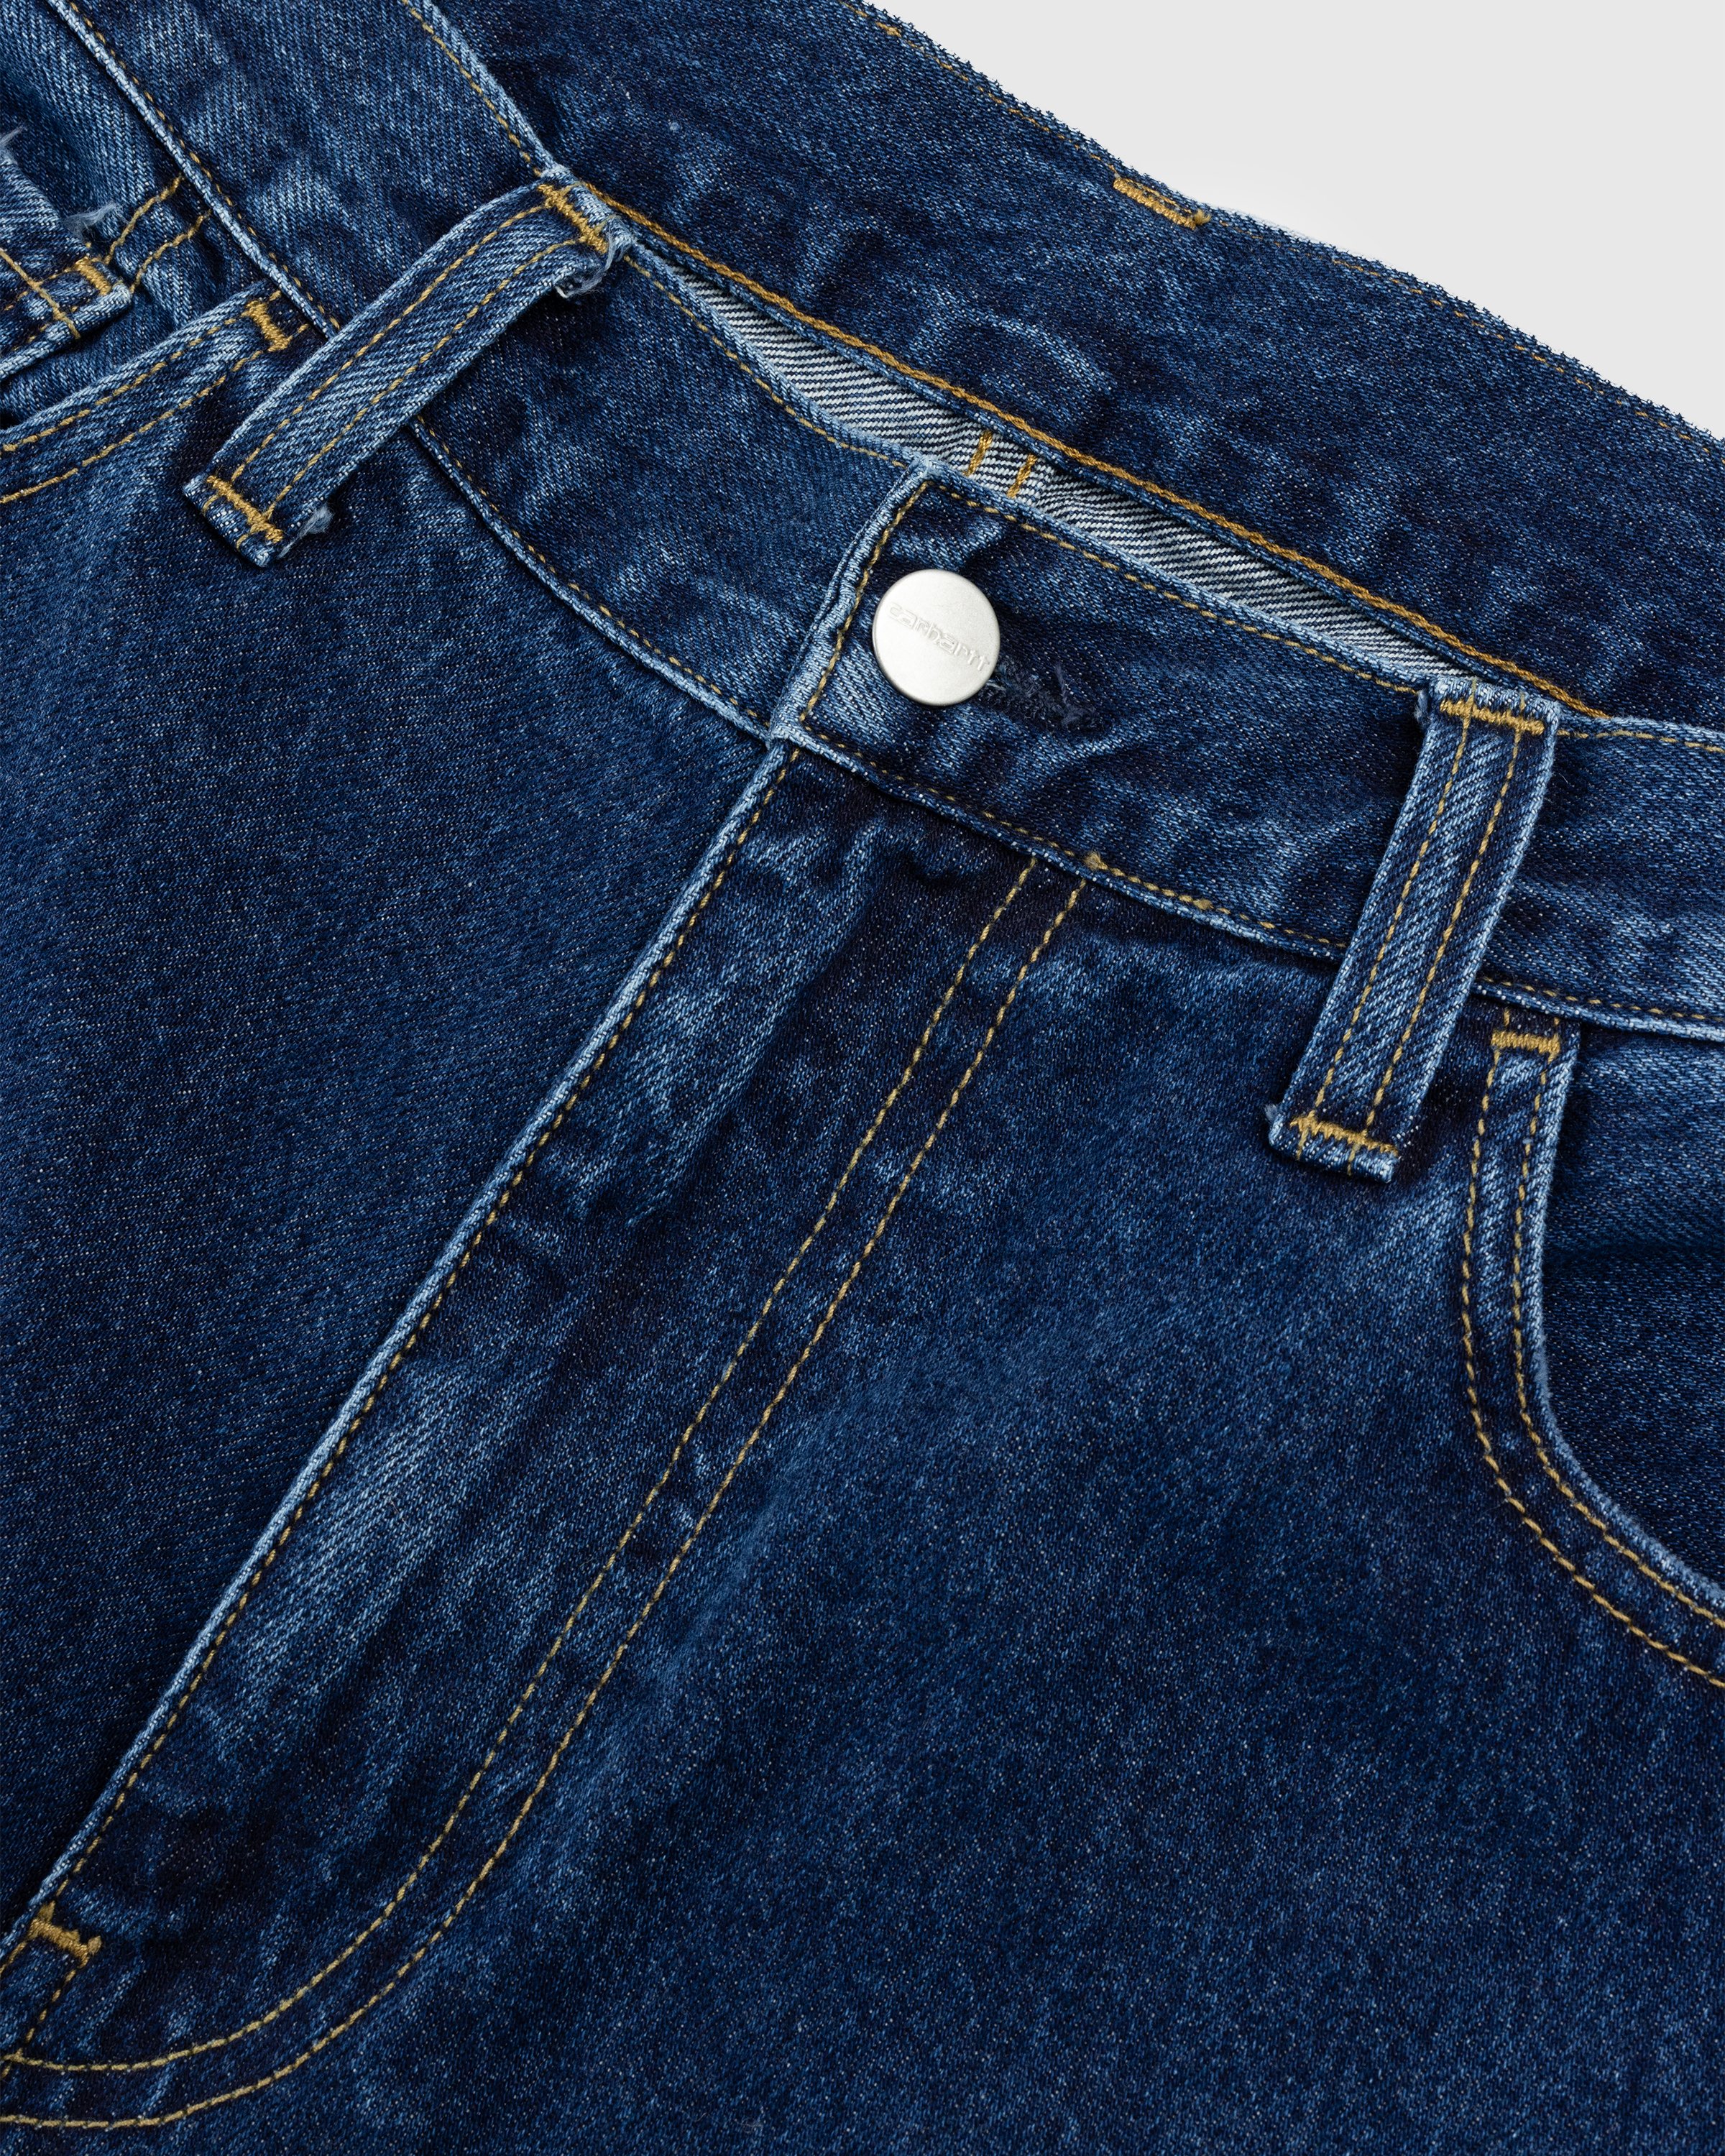 Carhartt WIP - Landon Pant Stonewashed Blue - Clothing - Blue - Image 5